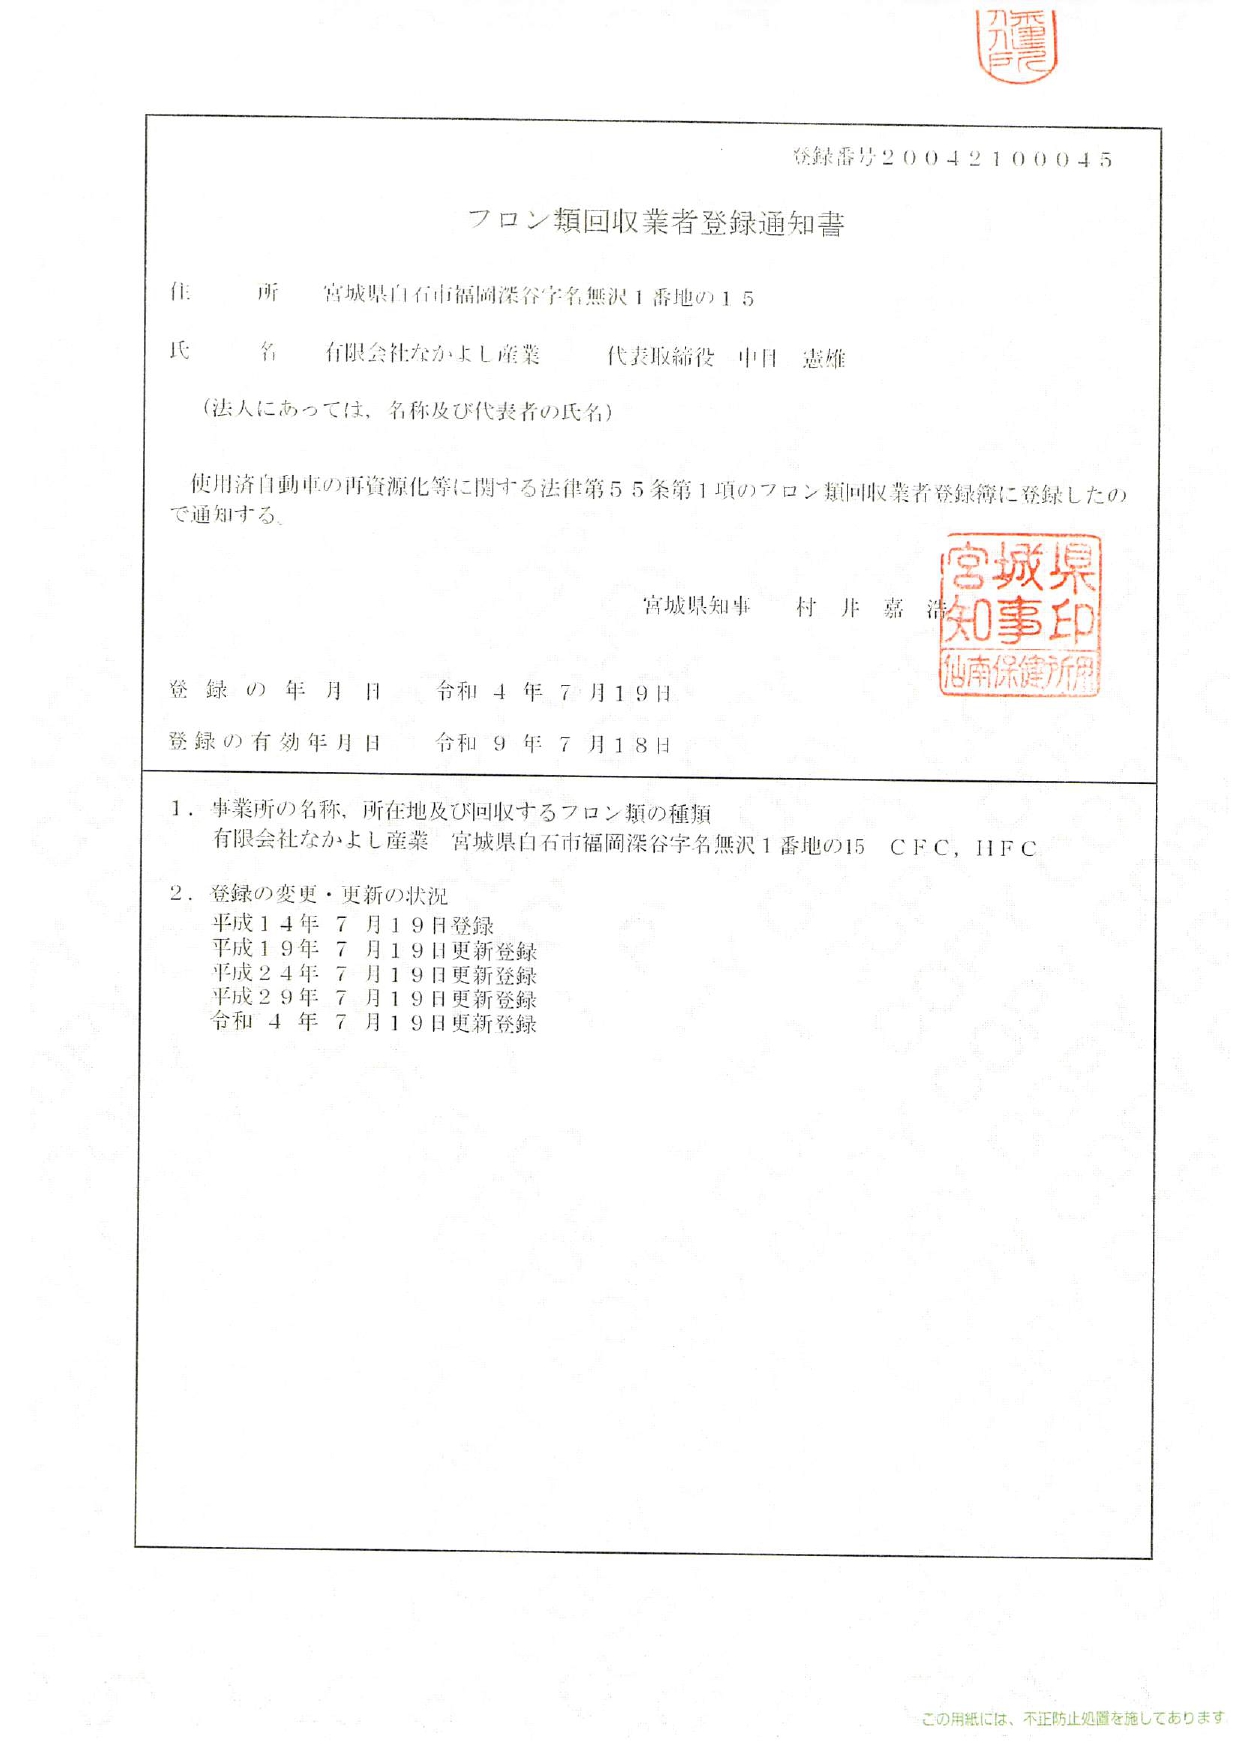 フロン類回収業者登録通知書_page-0001